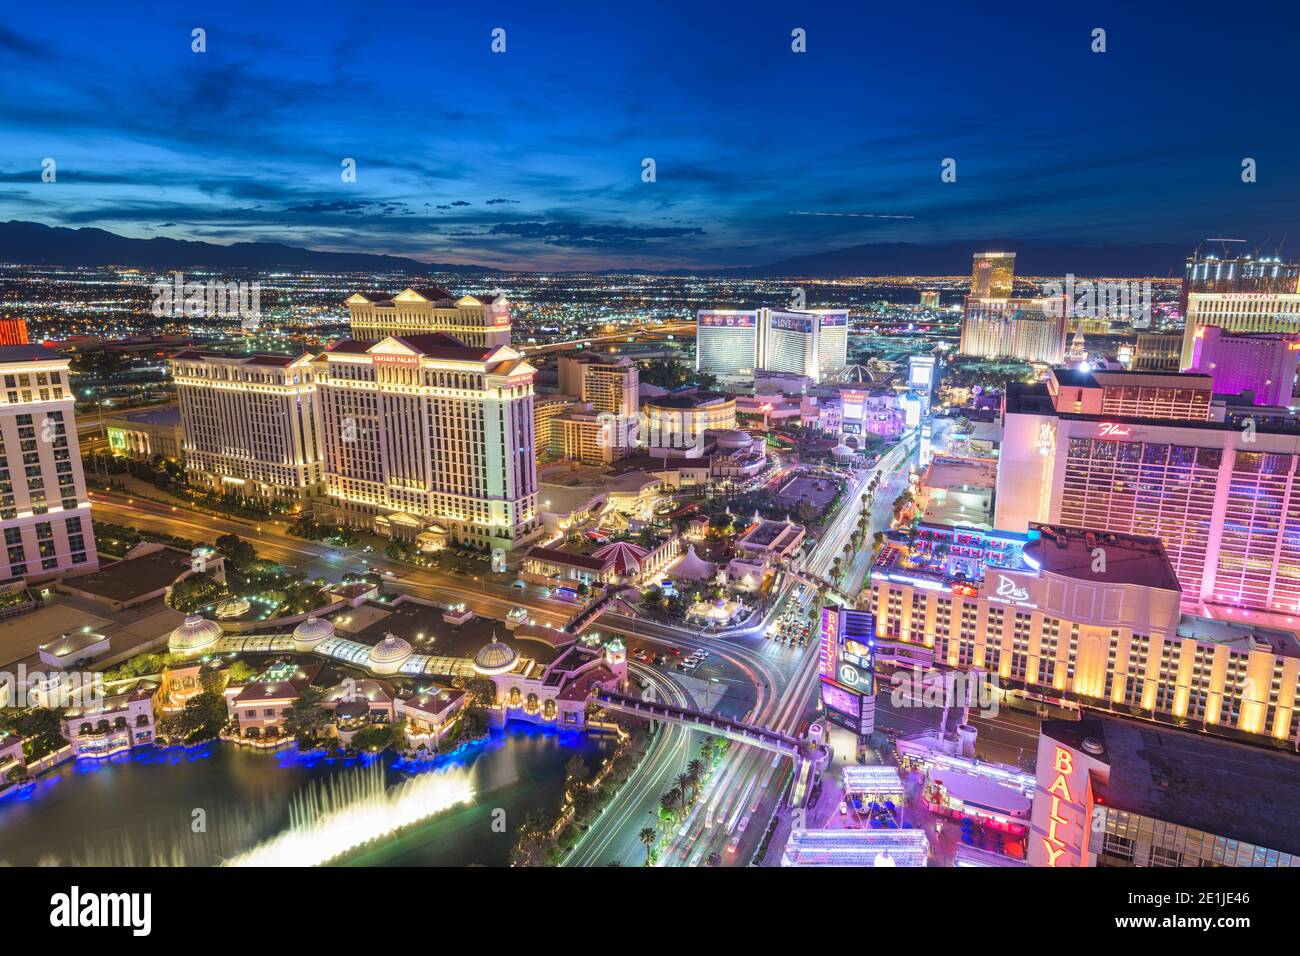 LAS VEGAS, NEVADA - 13 MAI 2019 : hôtels et casinos le long du Strip au crépuscule. Banque D'Images